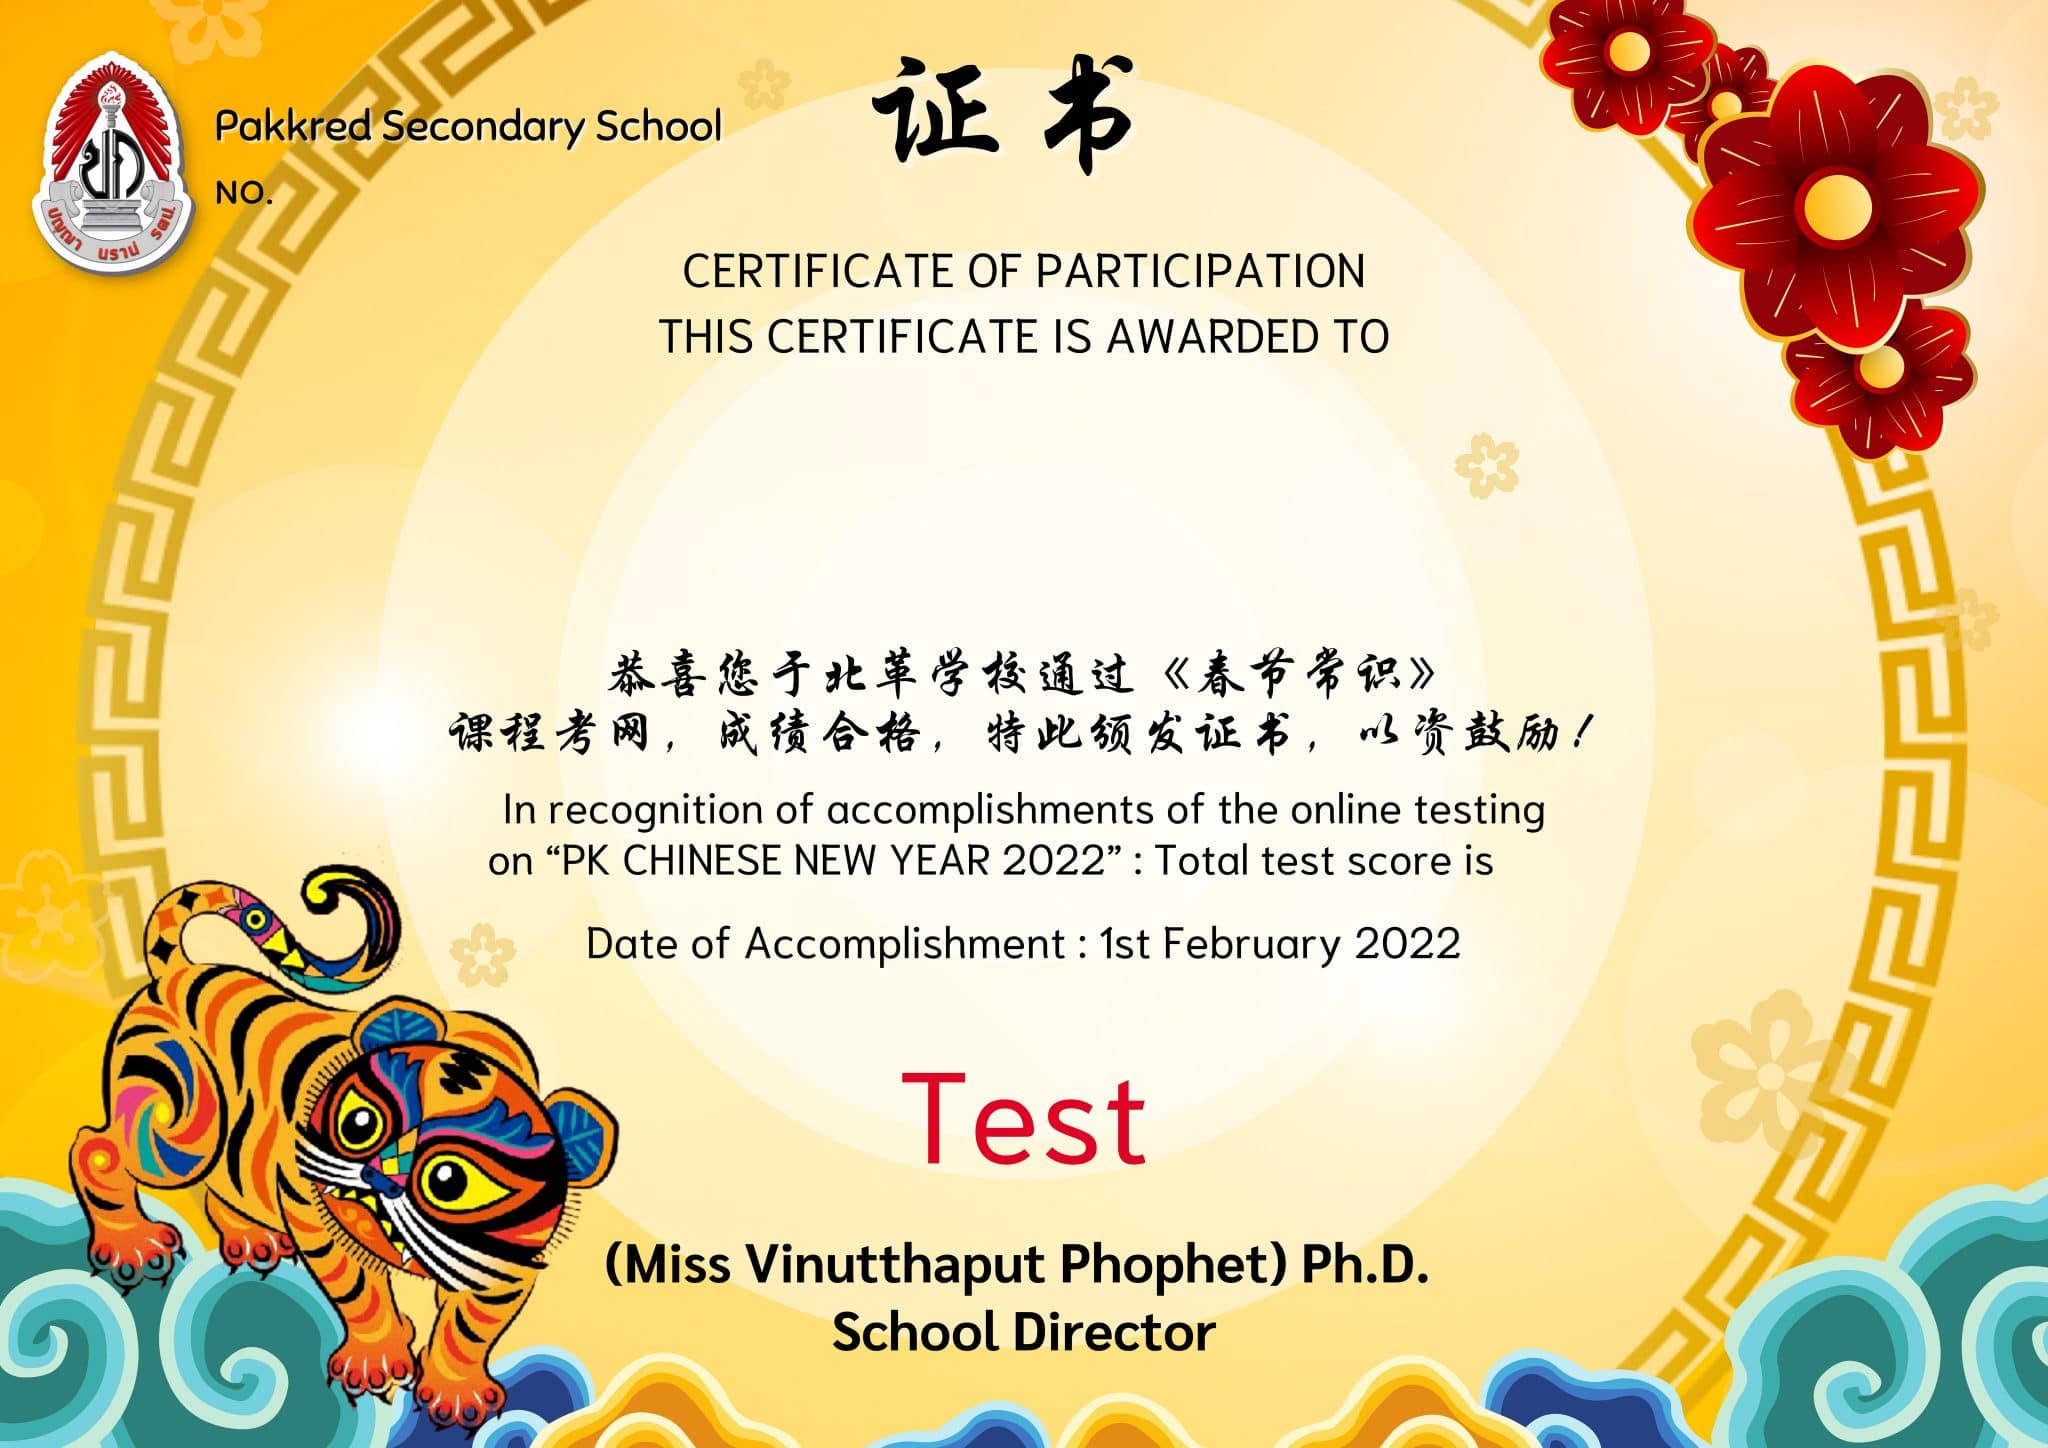 กิจกรรมตอบคำถามเทศกาลตรุษจีน ต้องตอบถูก 80% ขึ้นไป จึงจะได้รับเกีบรติบัตรทางอีเมล โดยโรงเรียนปากเกร็ด นนทบุรี